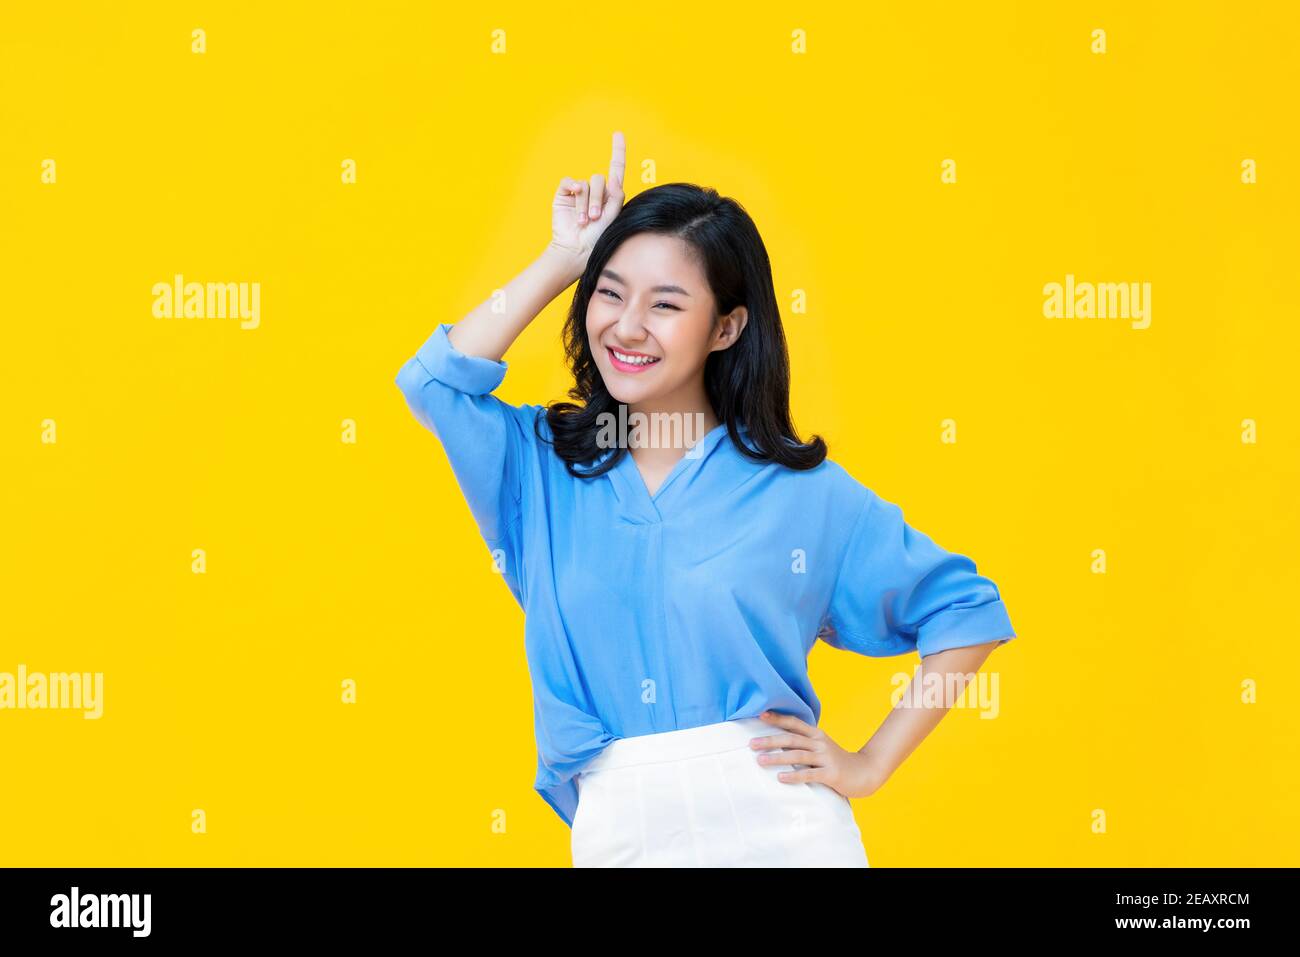 Allegra giovane donna asiatica in abbigliamento casual in piedi con uno mano sulla vita mentre altri ha sollevato gesturing lei è il migliore su sfondo giallo Foto Stock